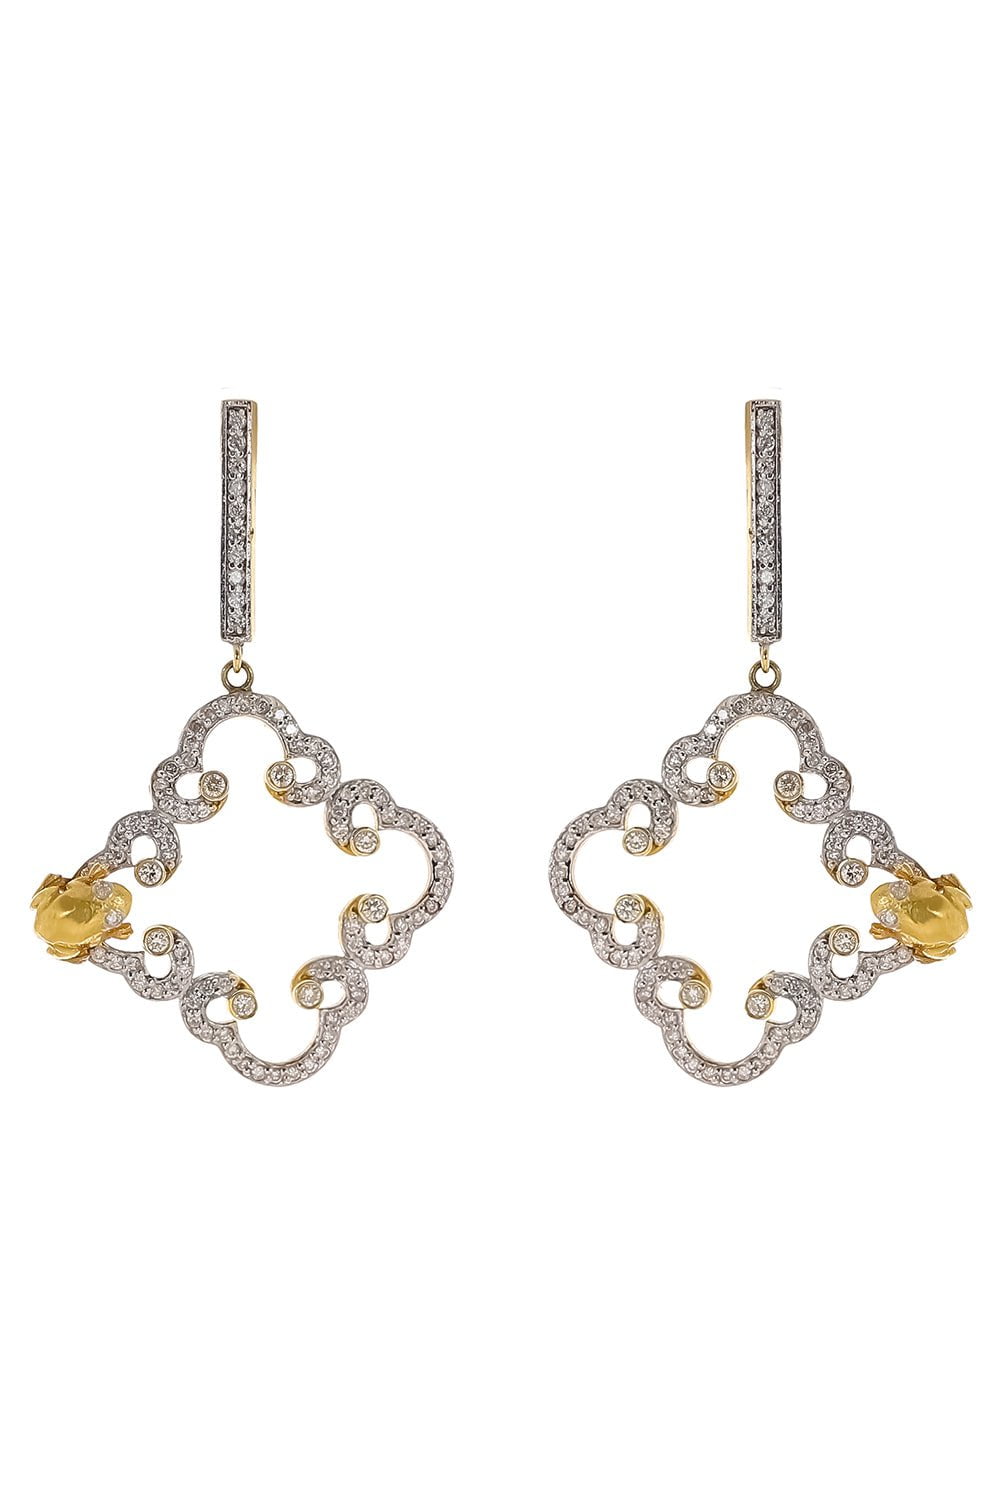 TANYA FARAH-Royal Couture Medium Cloud Earrings-YELLOW GOLD